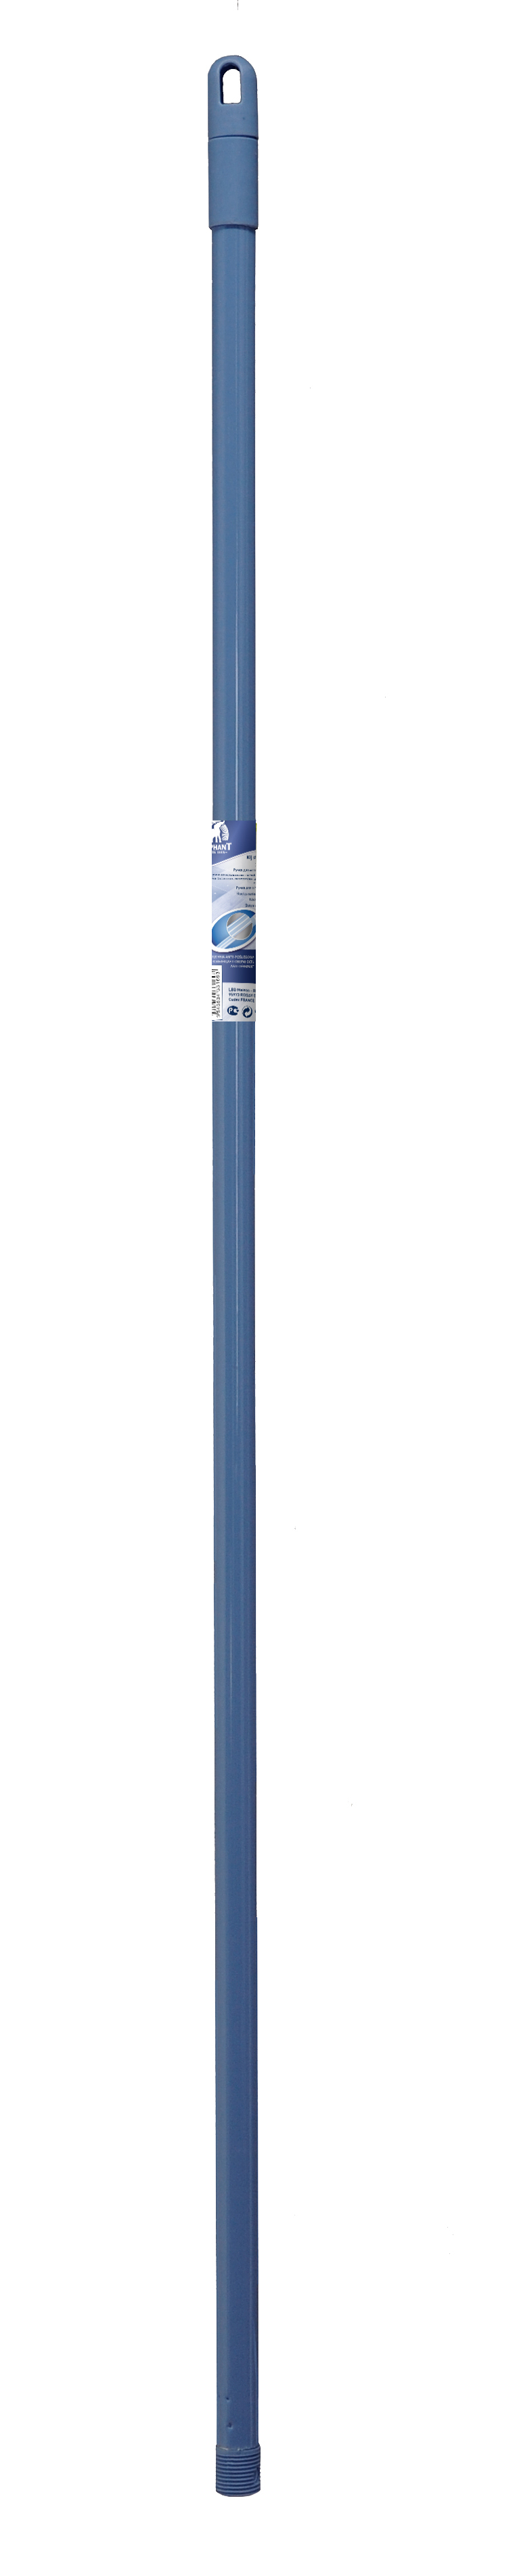 Ручка для швабры металлическая (130 см), размер 130 см, цвет синий han442405 Ручка для швабры металлическая (130 см) - фото 1